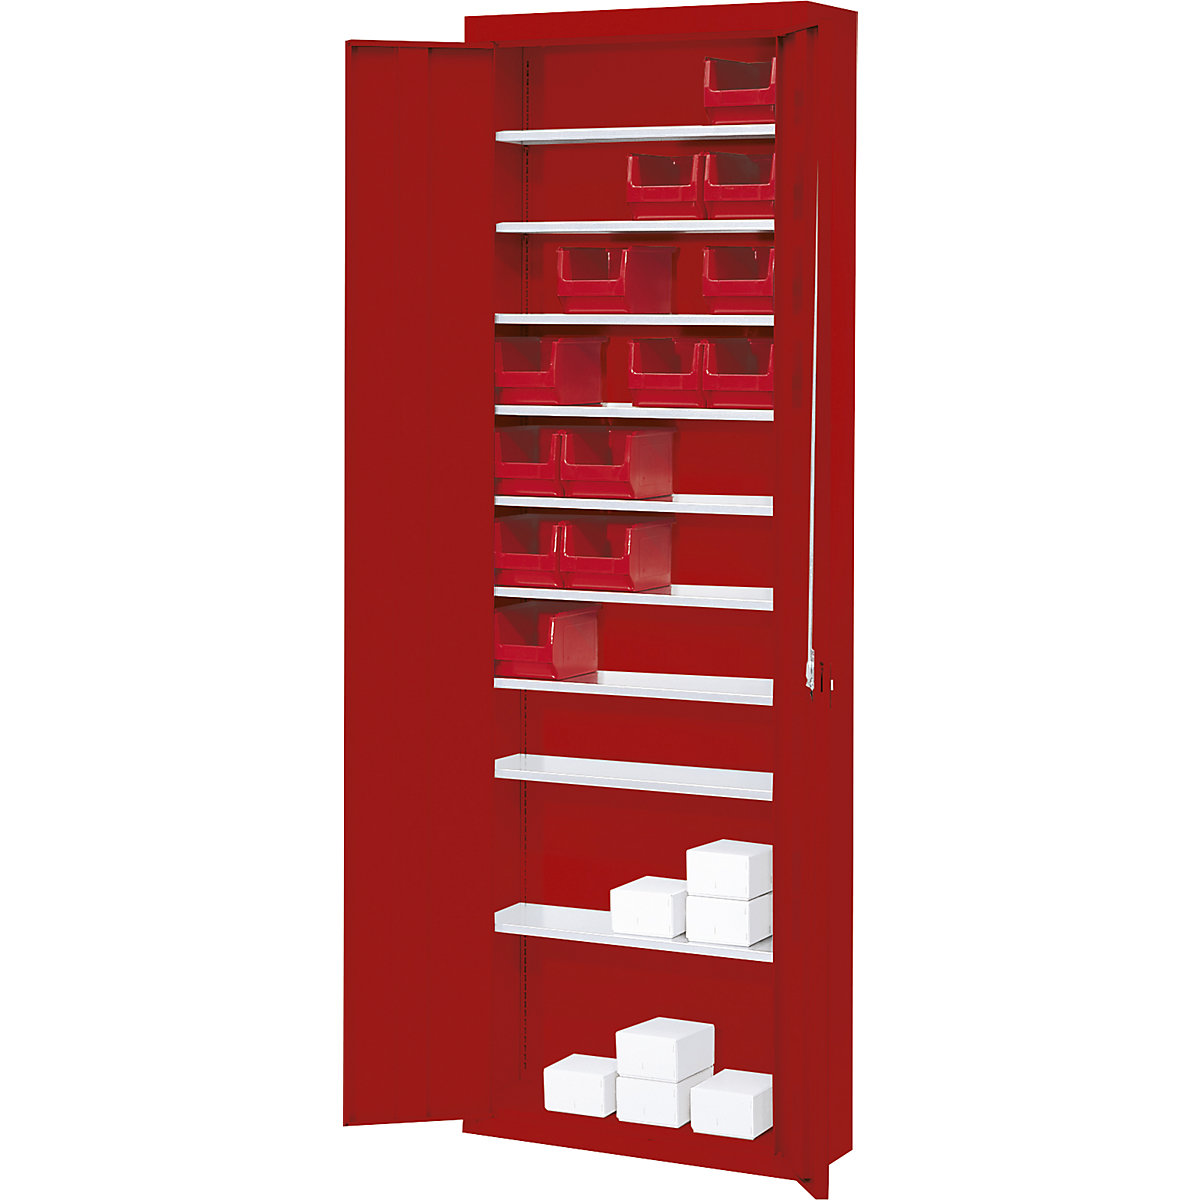 Skladišni ormar bez otvorenih skladišnih kutija – mauser, VxŠxD 2150 x 680 x 280 mm, u jednoj boji, u crvenoj boji-7